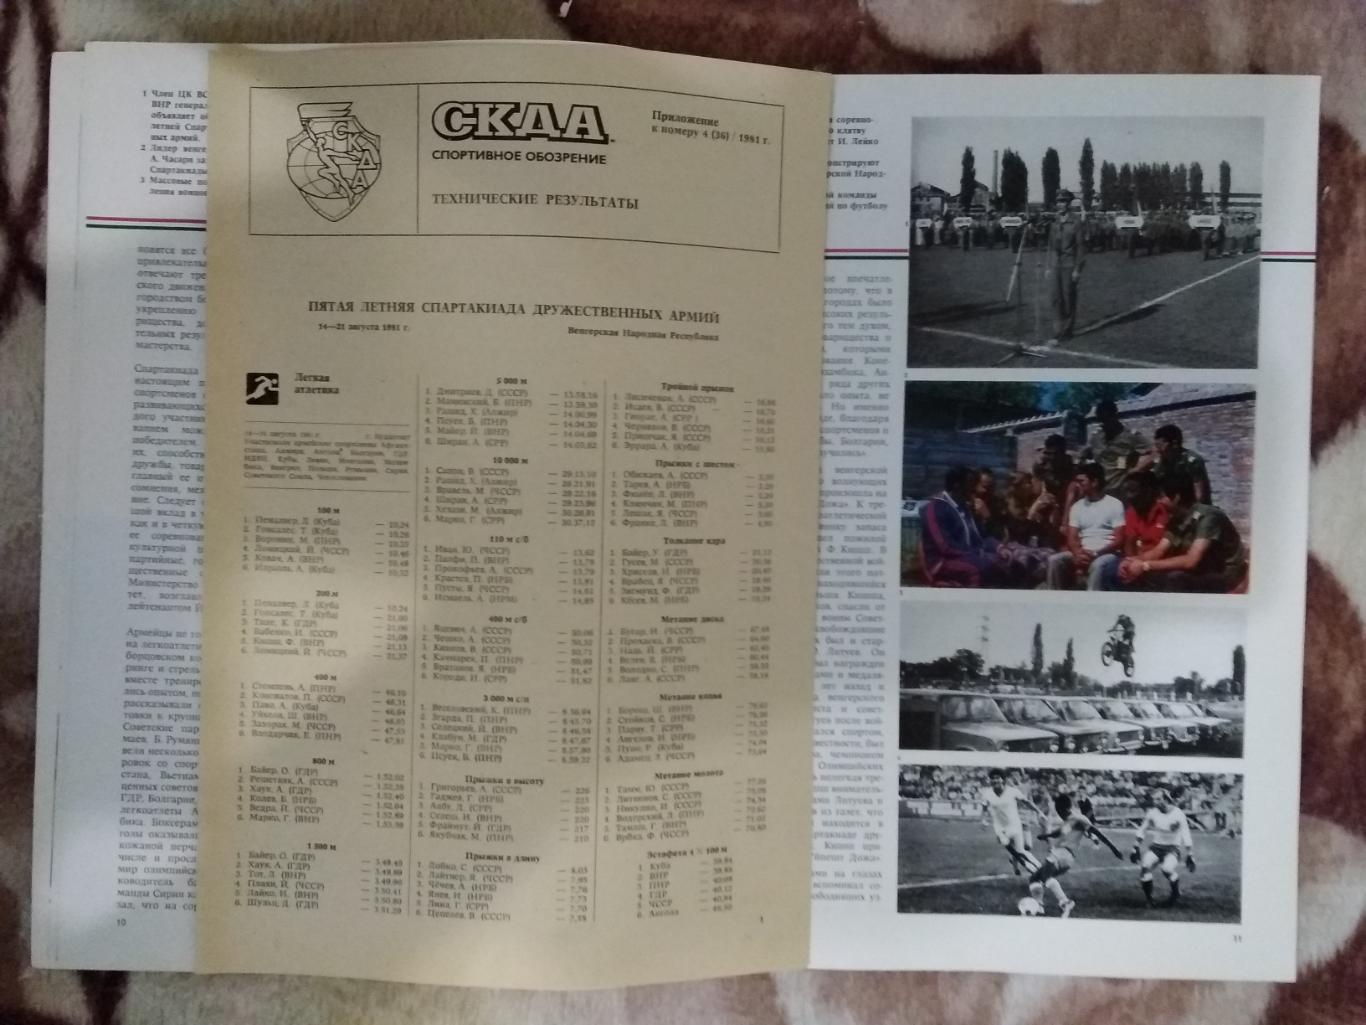 Журнал.СКДА - спортивное обозрение № 4 1981 г. + вкладка. 1